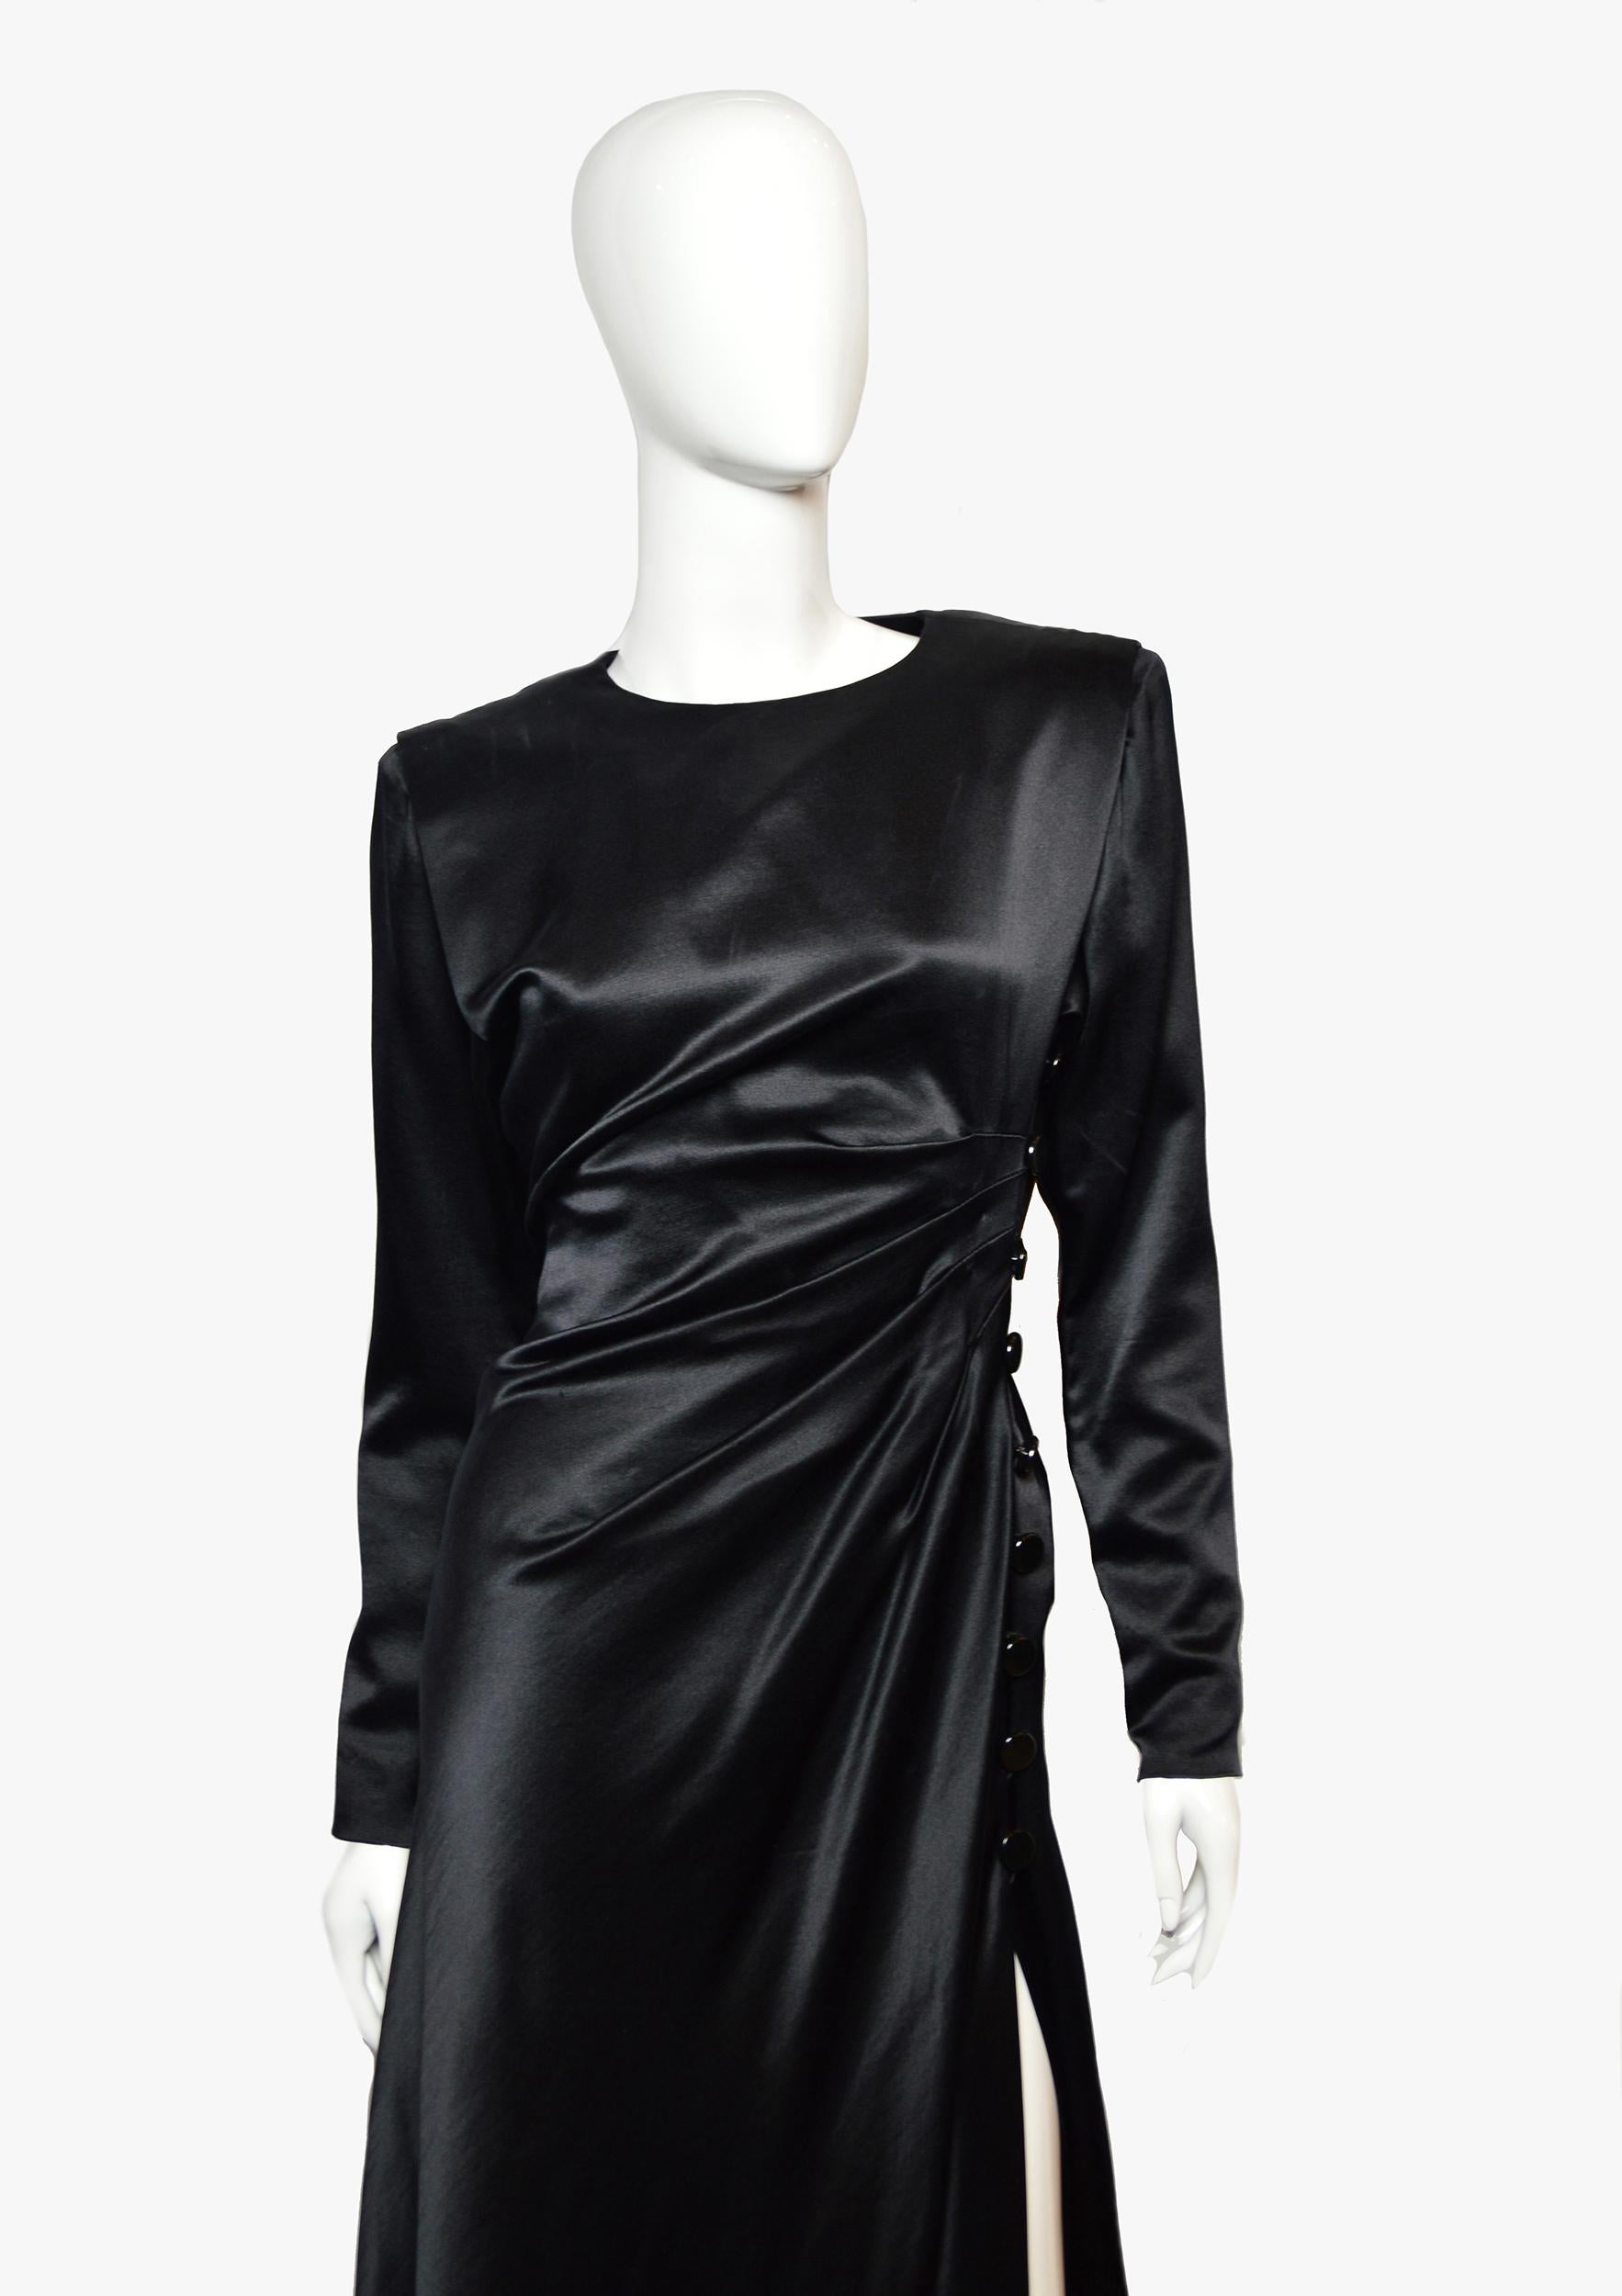 Robe de soirée noire vintage Yves Saint Laurent, défilé automne-hiver 1987-1988.

Une robe fluide d'une incroyable beauté, reflétant fidèlement le style du grand couturier.

Épaules avec une ligne claire, drapé avec des boutons dans la zone de la